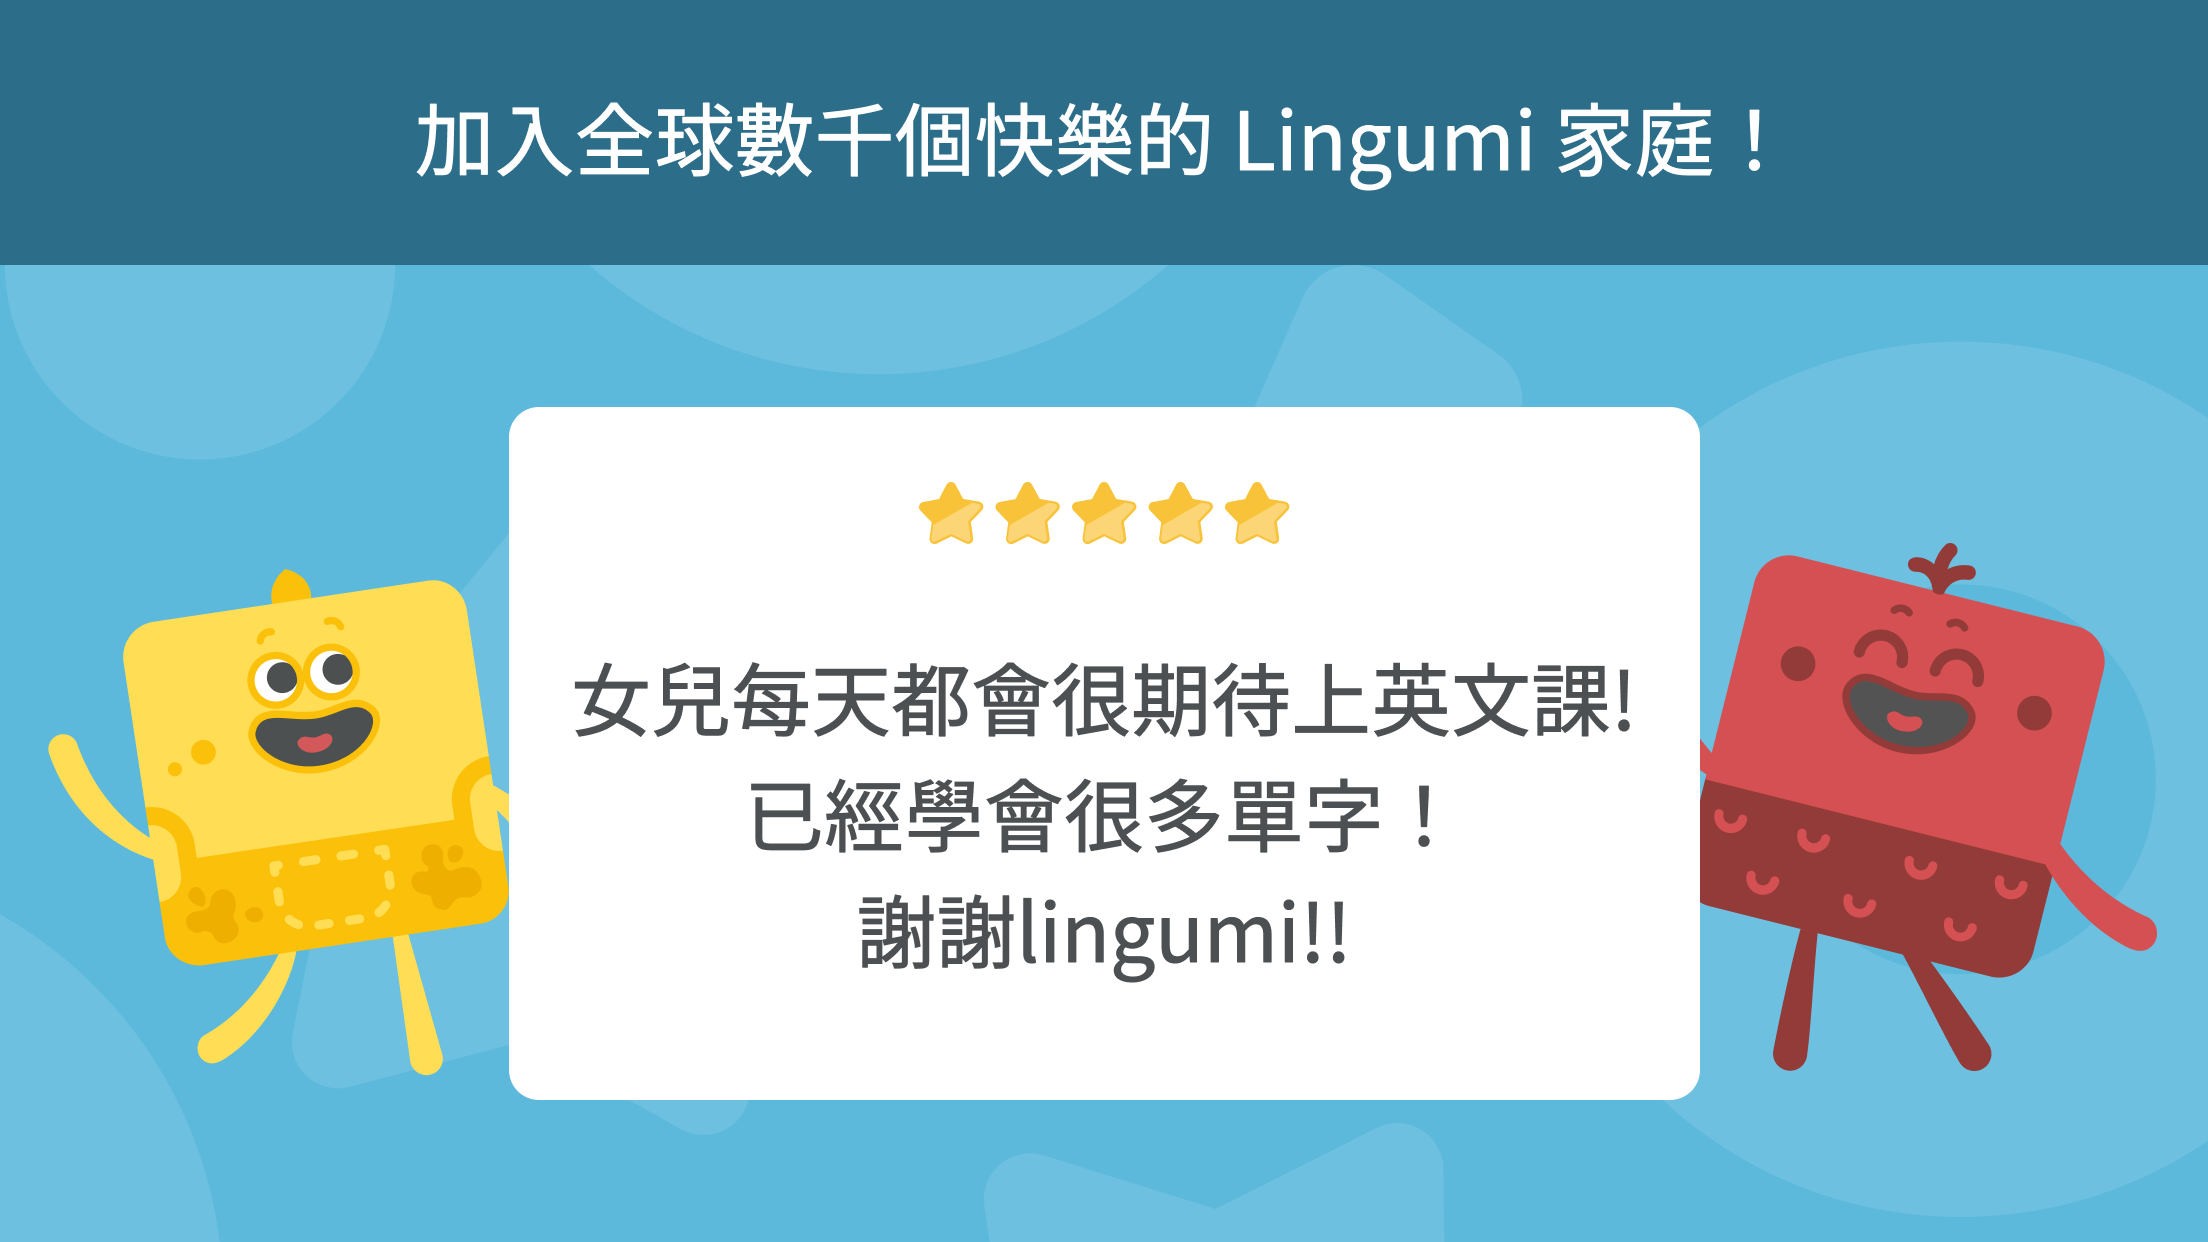 Lingumi 專為孩子設計 | 最棒的兒童英語學習課程